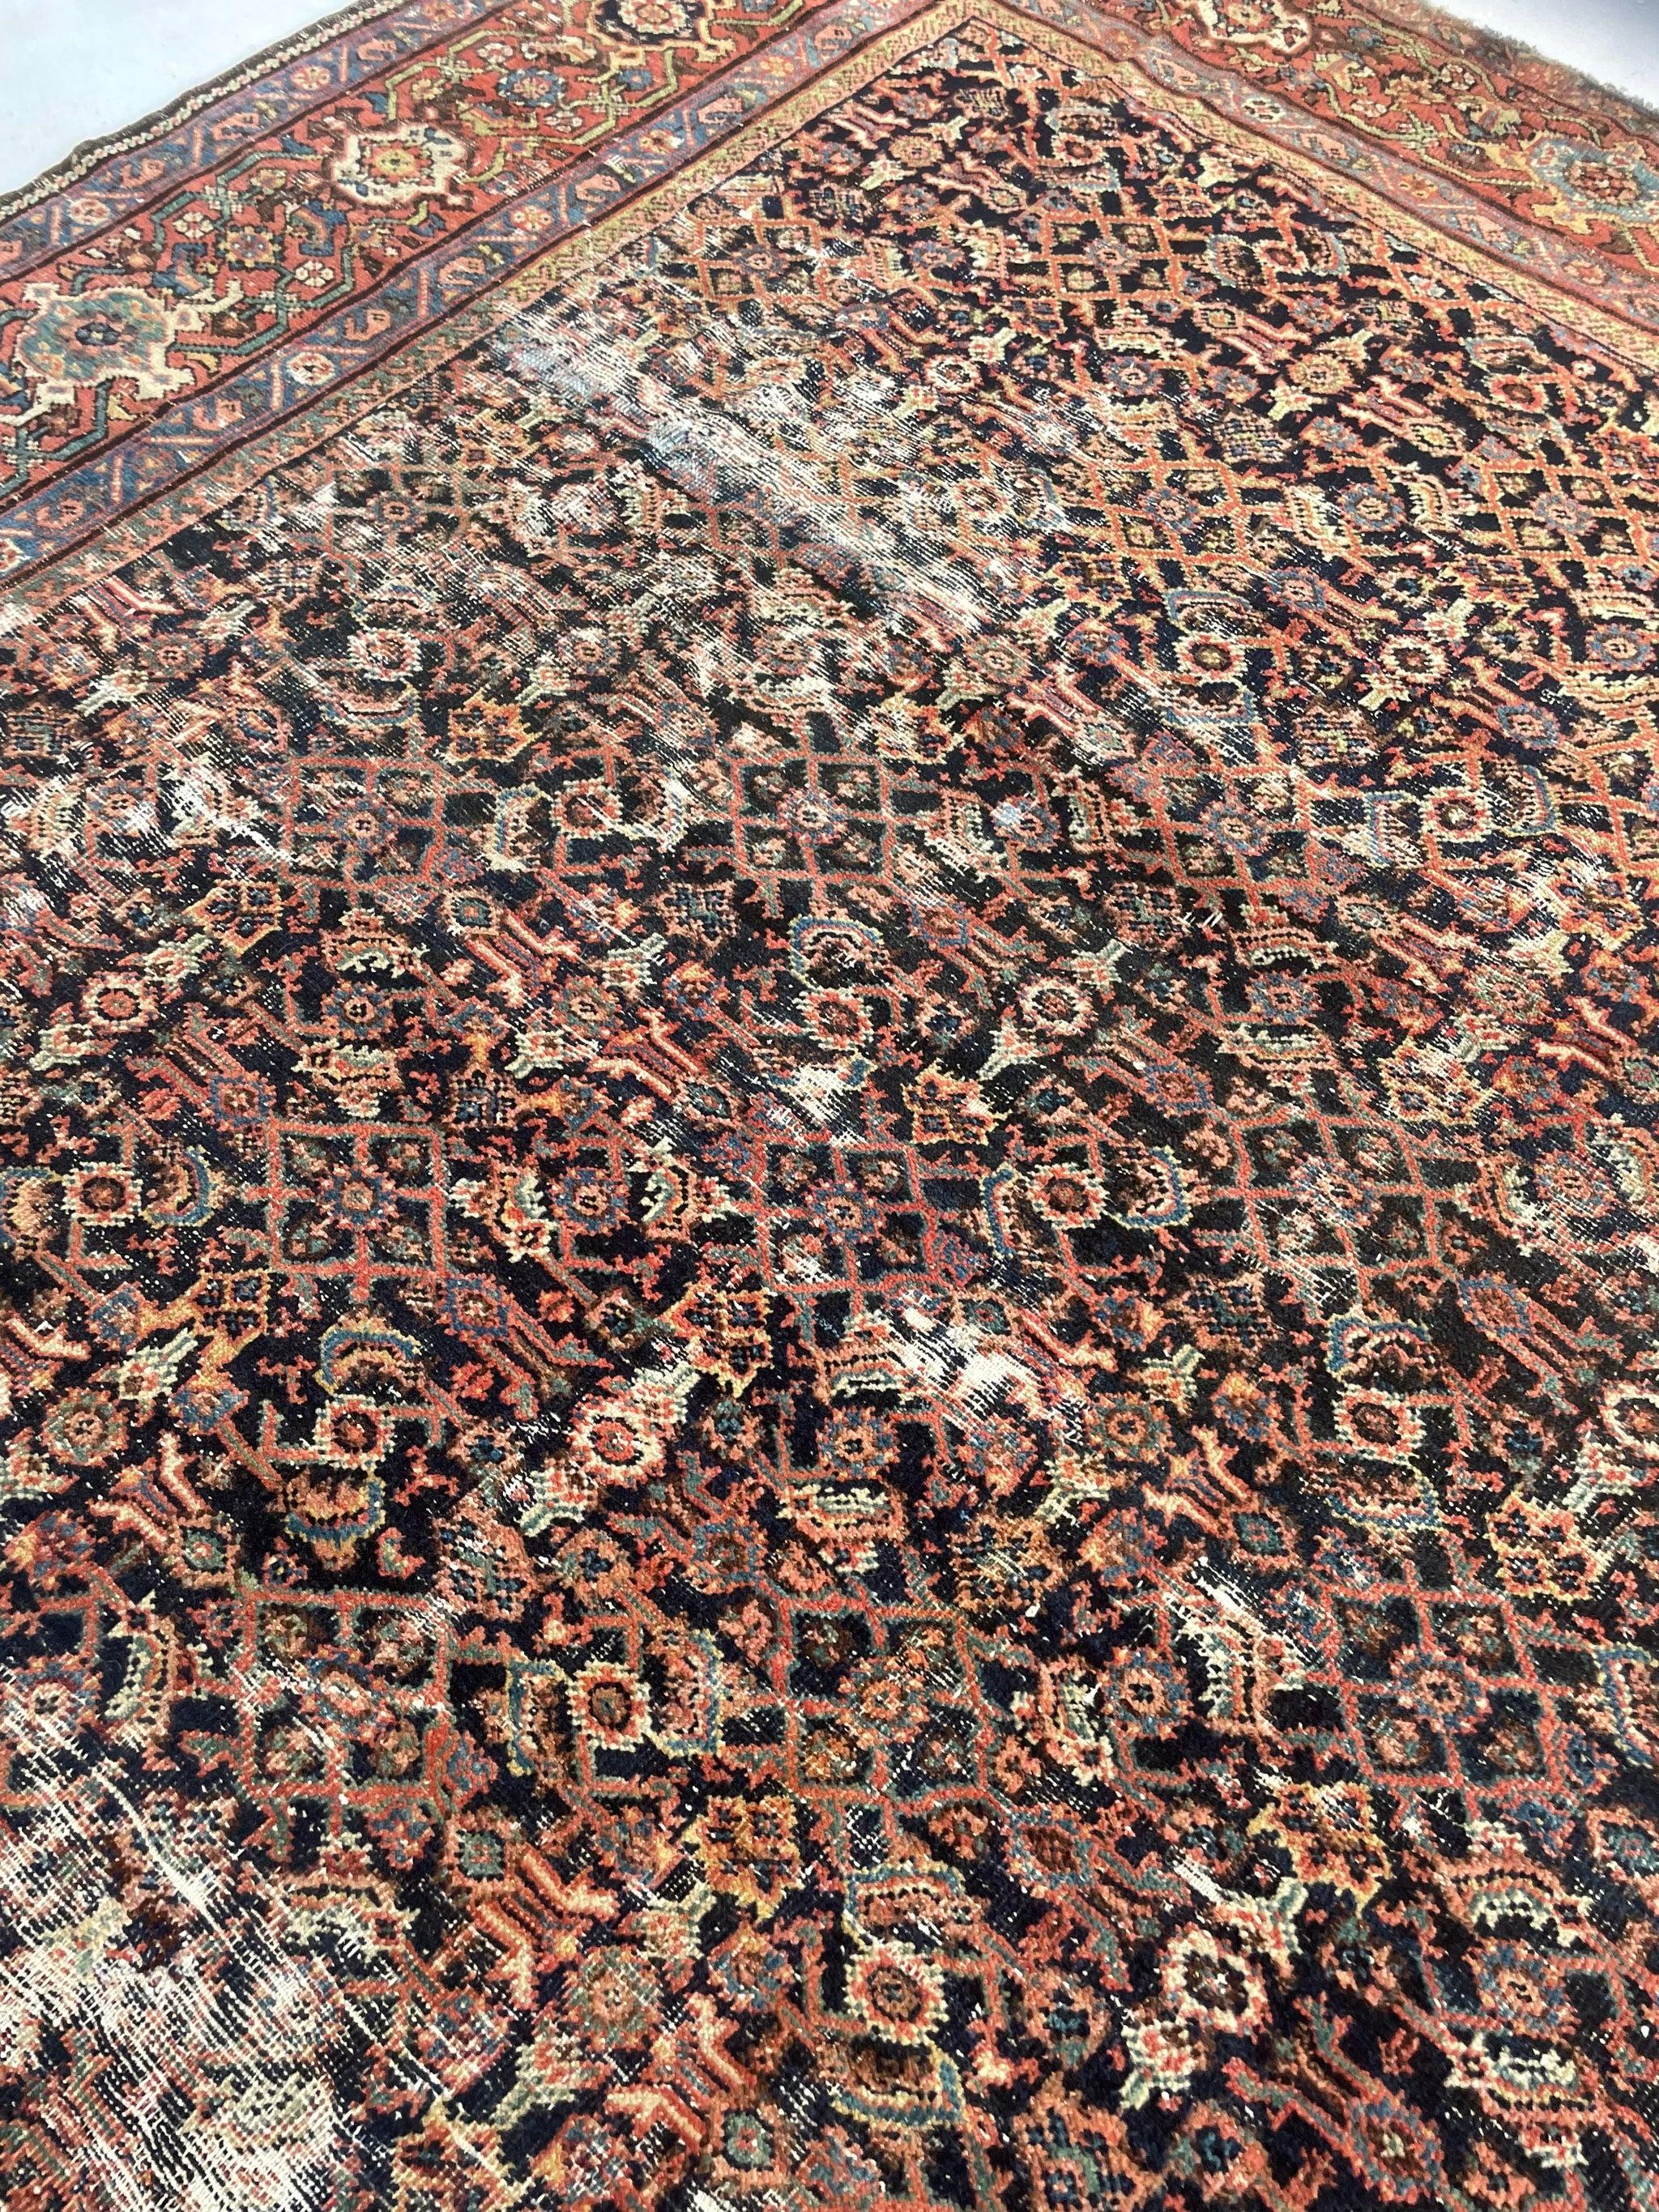 Antique Persian Carpet Rug in Deep Old-World Indigo, circa 1900-1915's For Sale 5